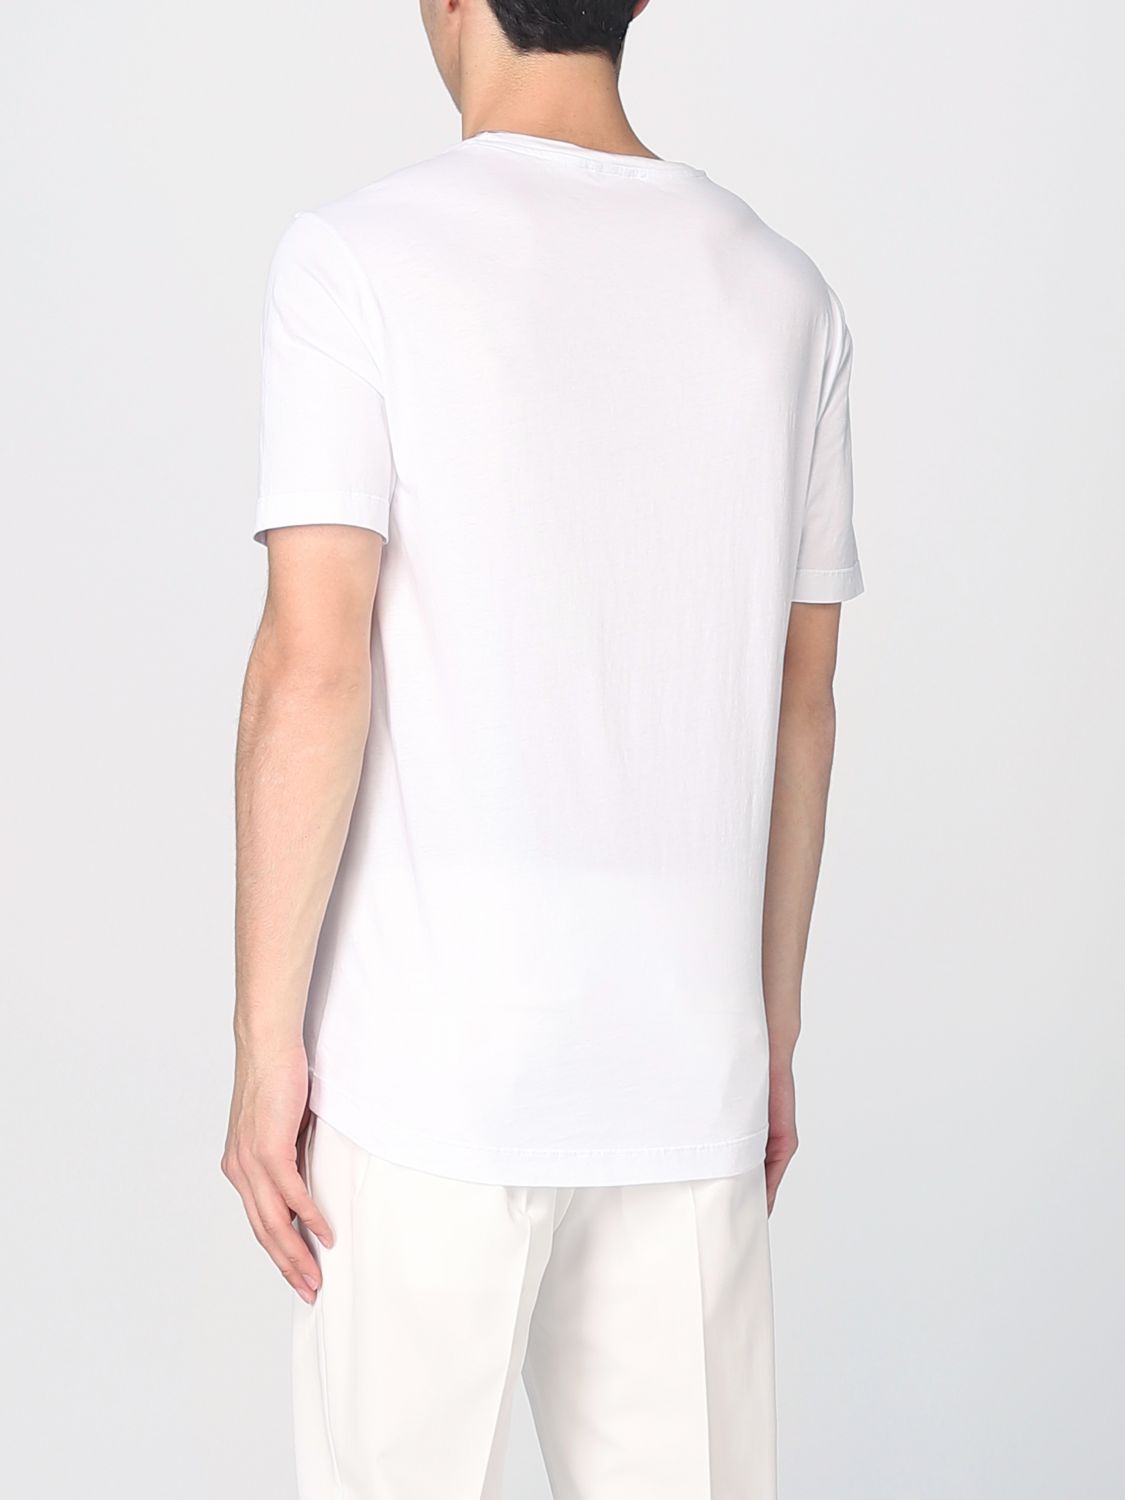 T-shirt Daniele Alessandrini: Daniele Alessandrini t-shirt for men white 2